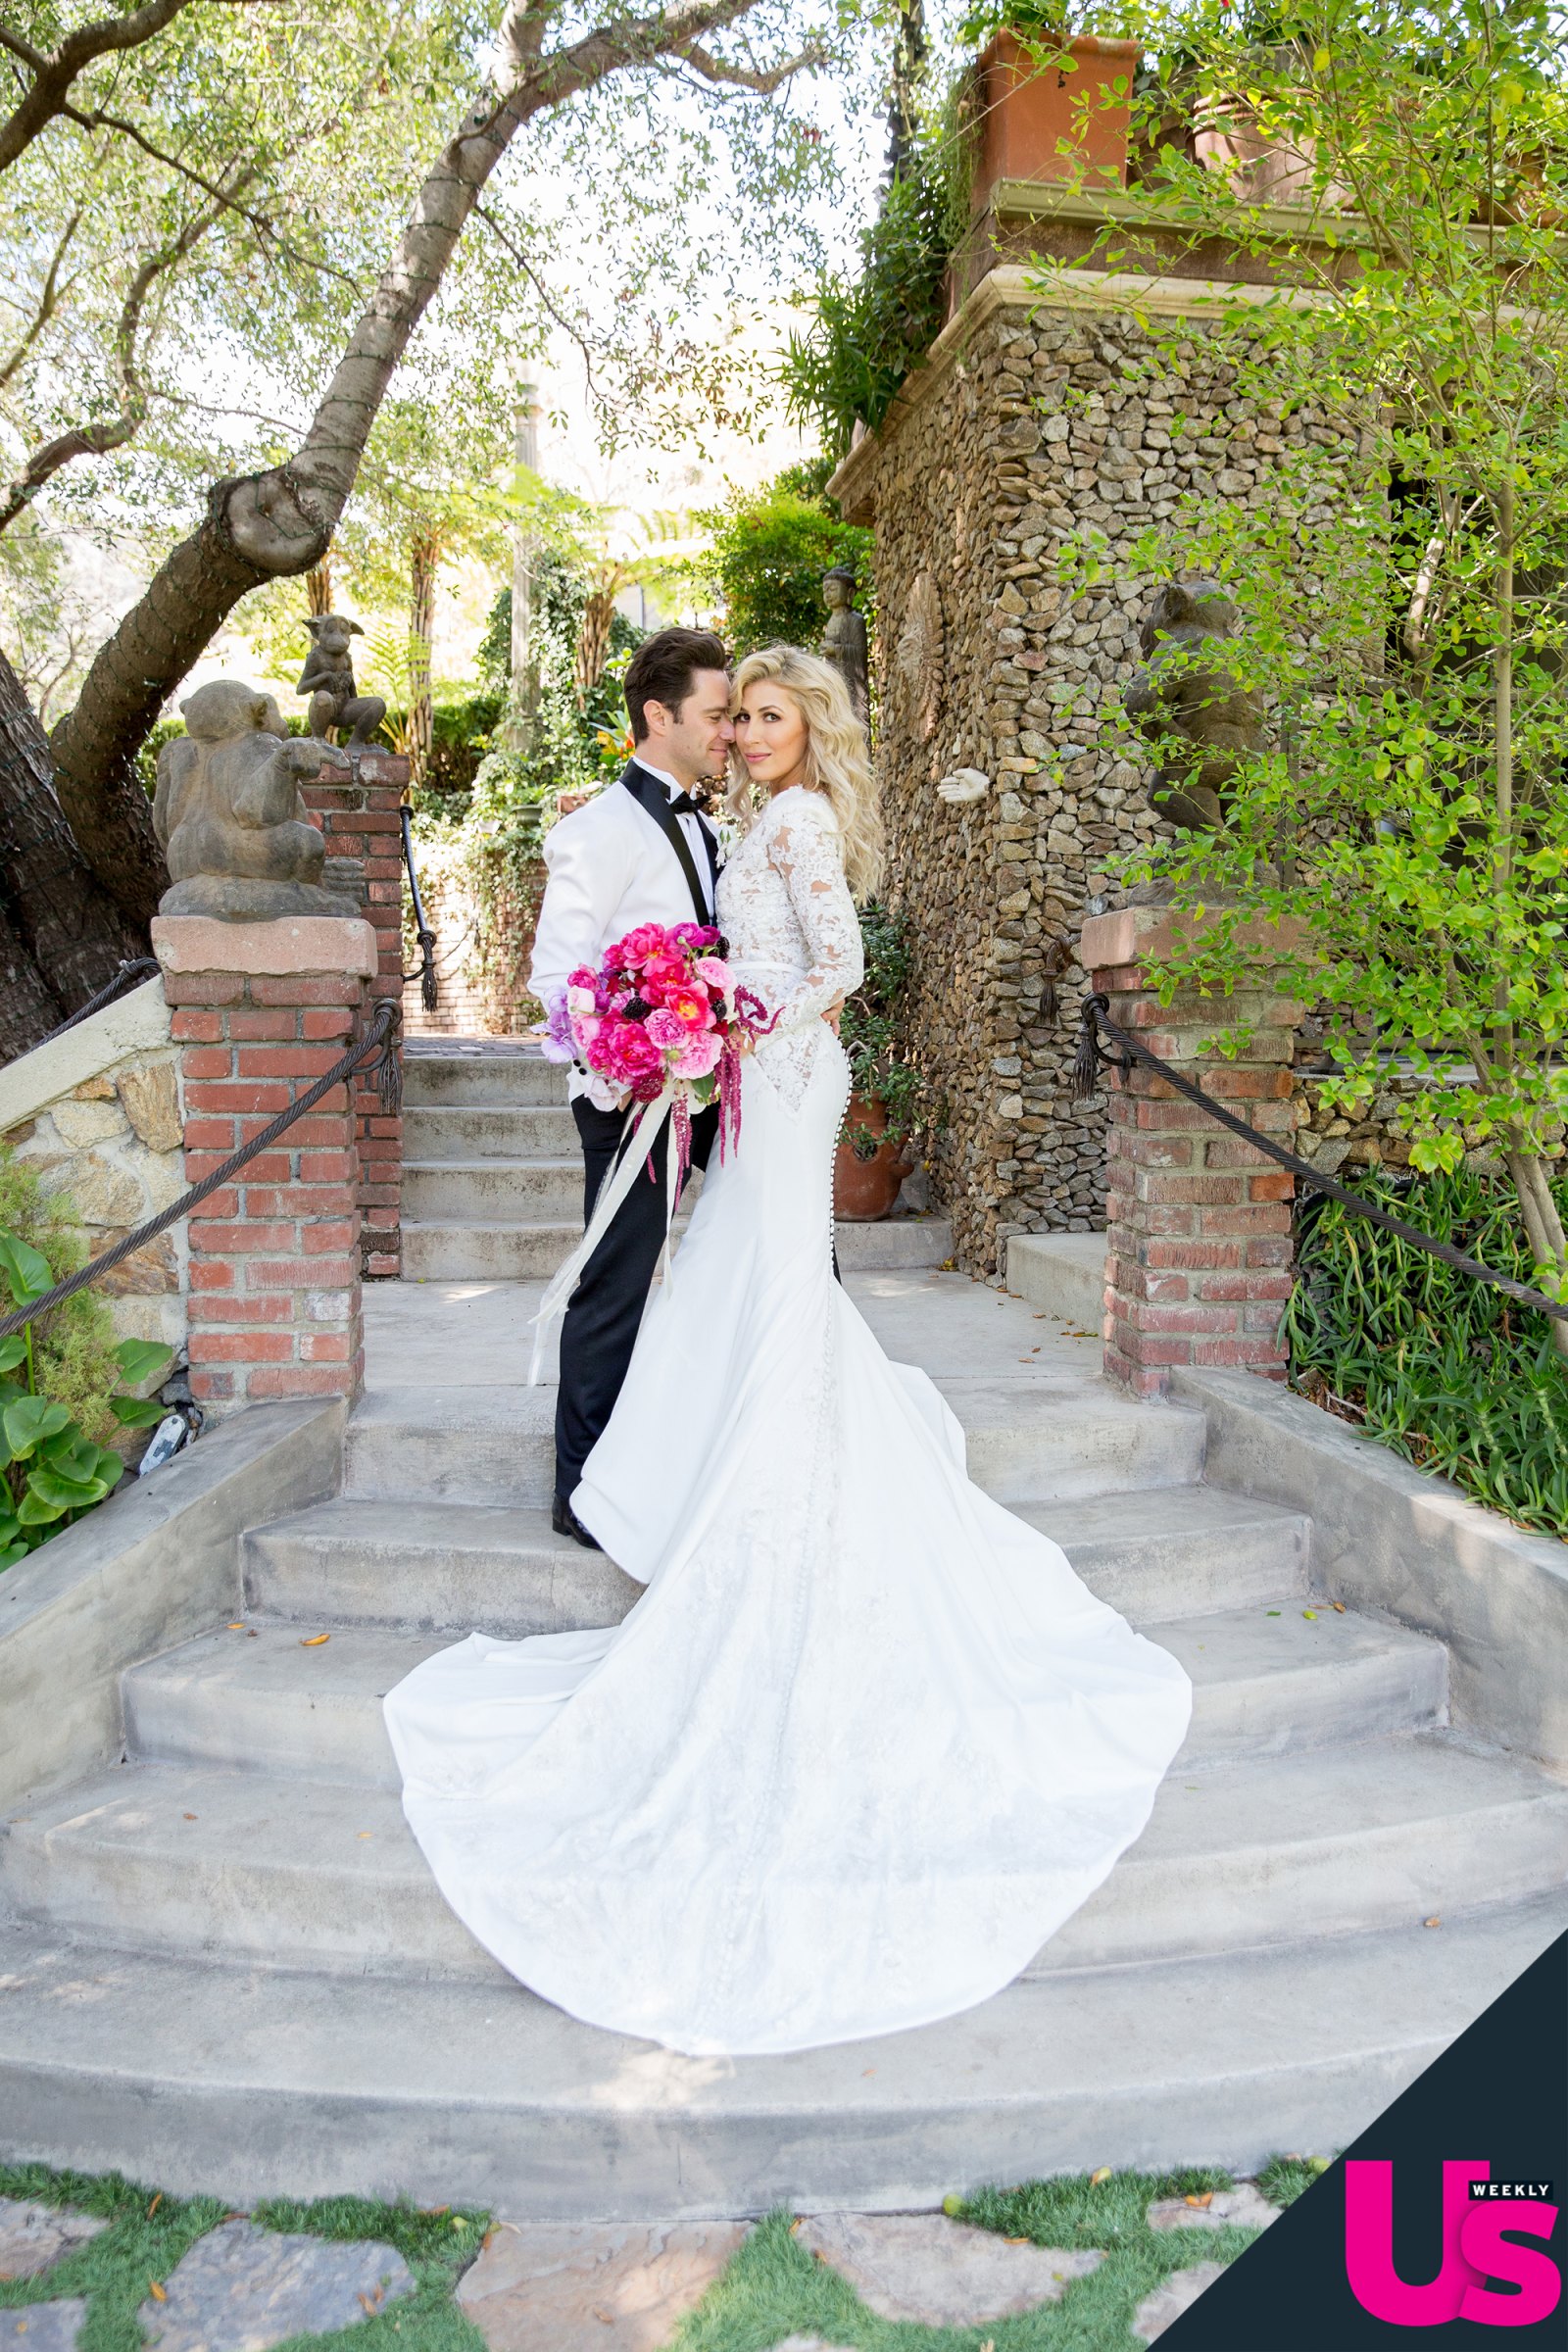 Emma Slater and Sasha Farber wedding